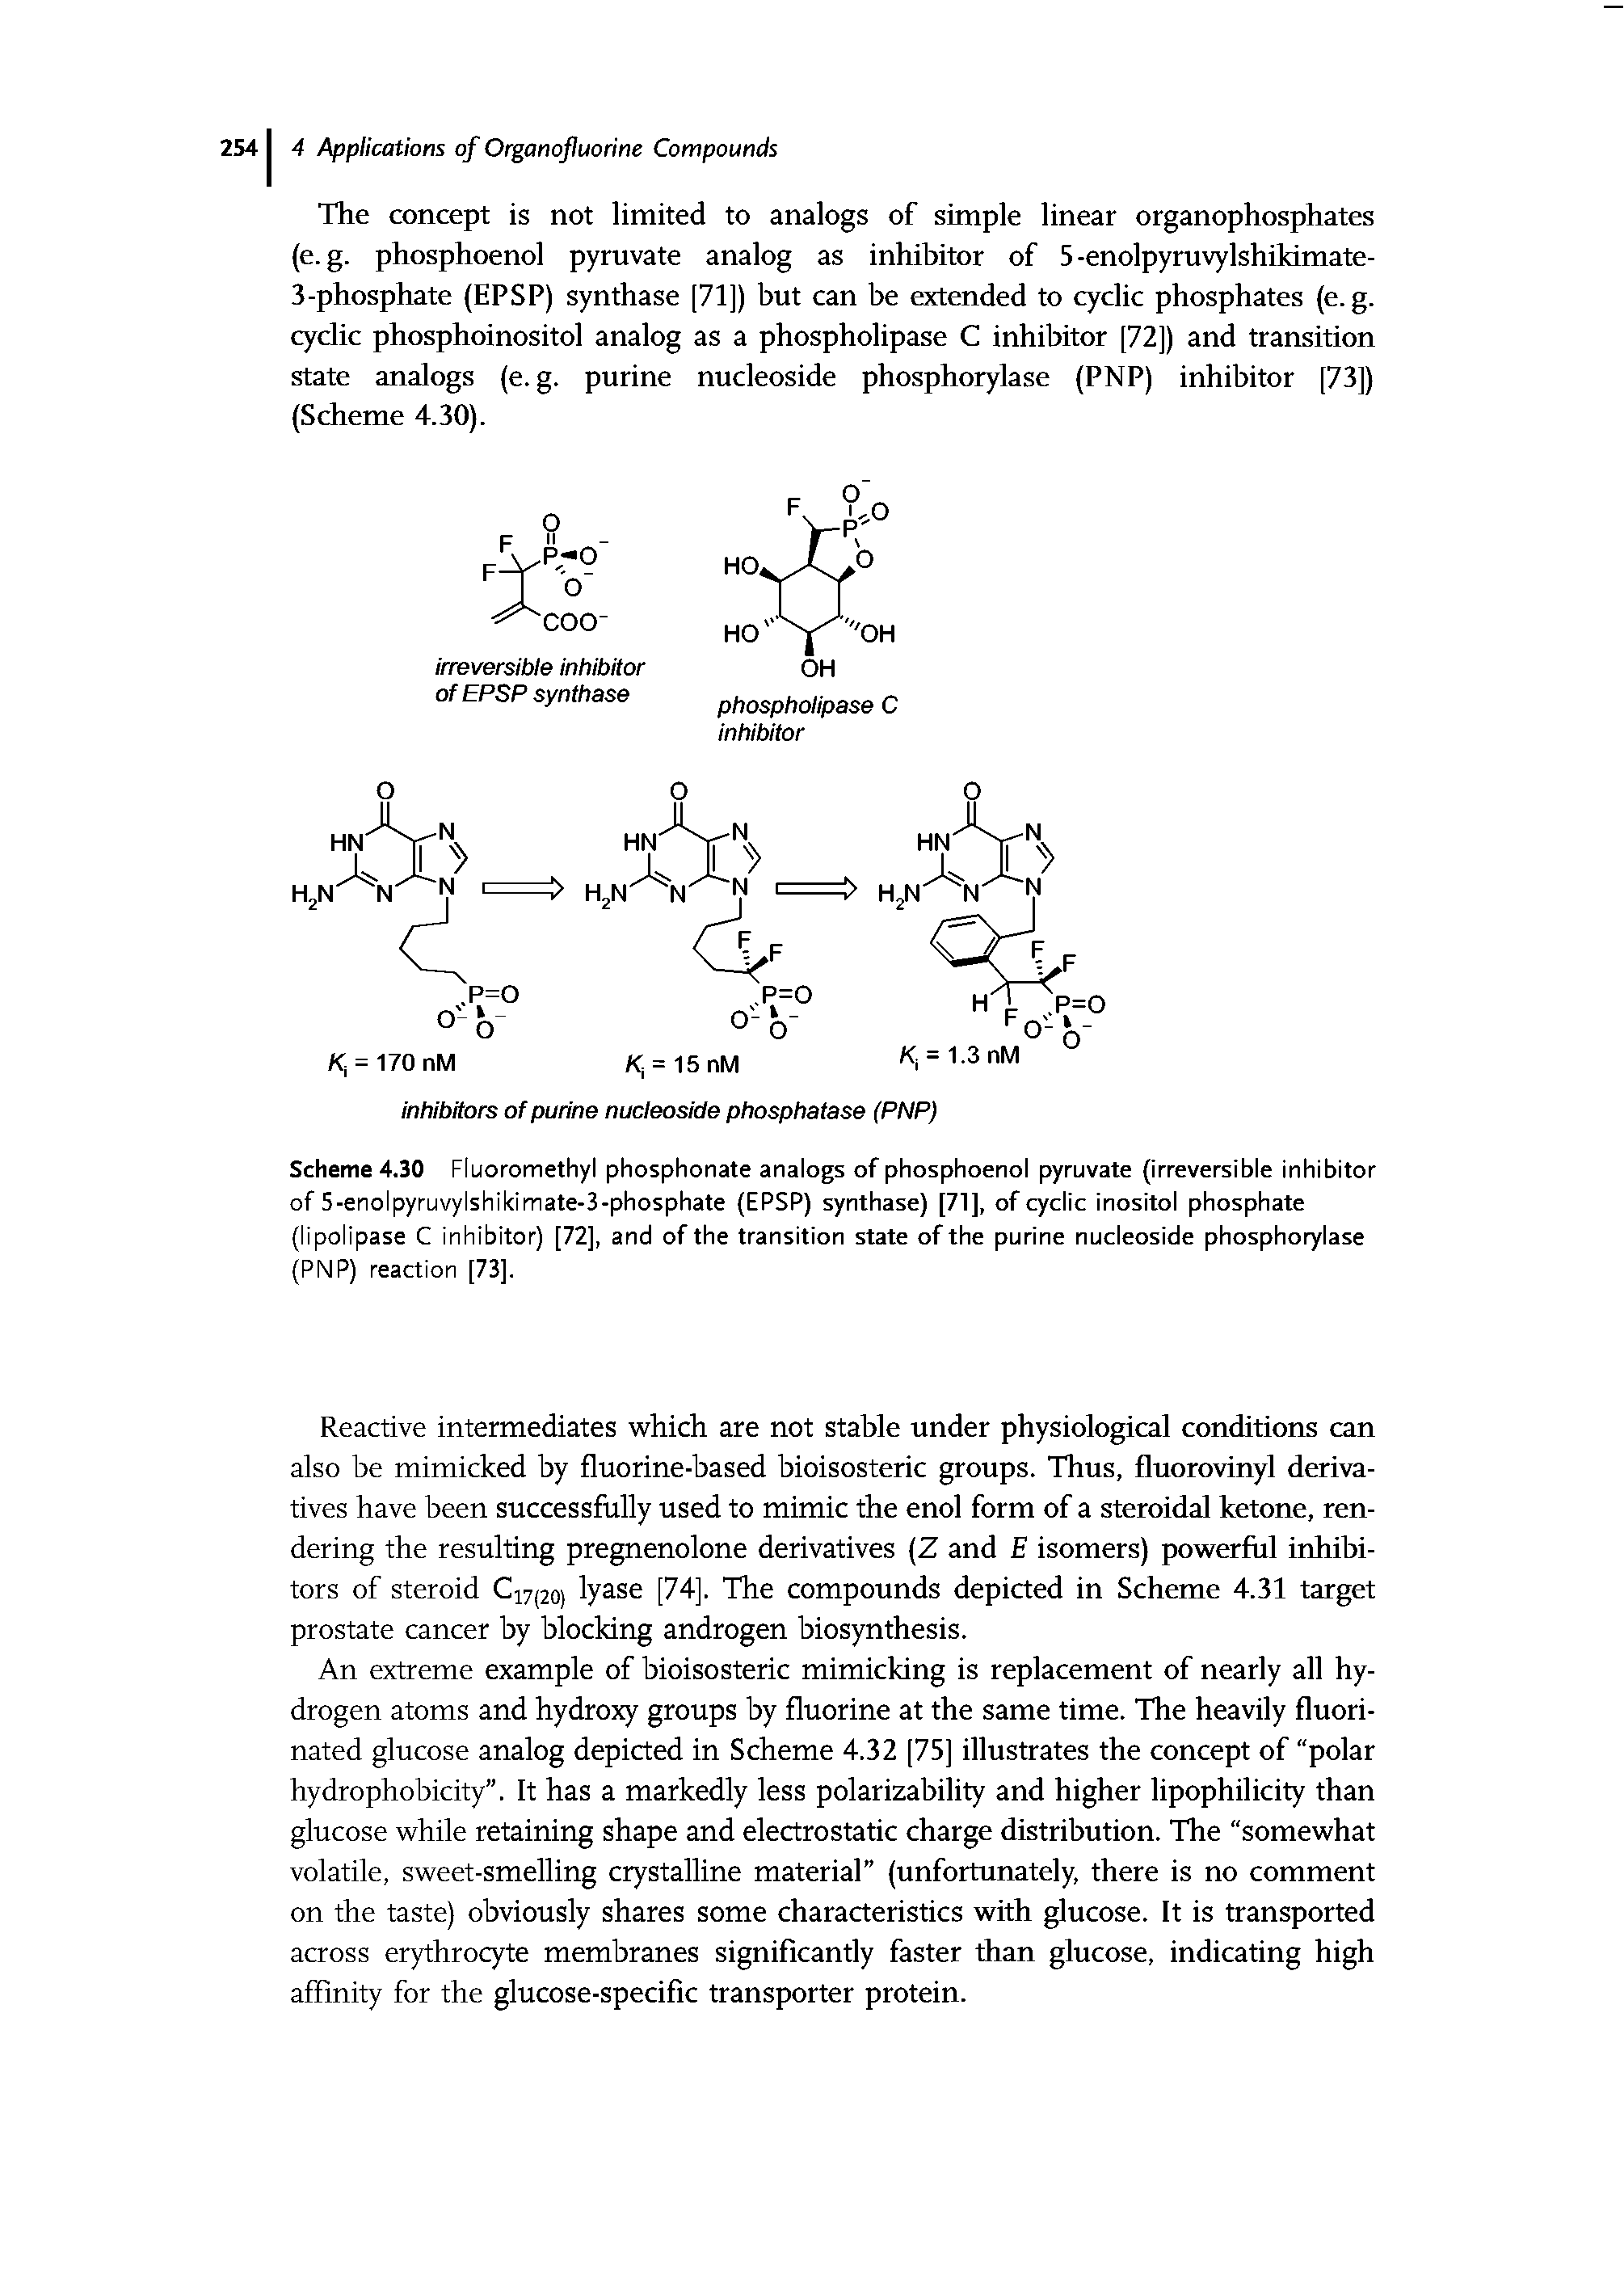 Scheme 4.30 Fluoromethyl phosphonate analogs of phosphoenol pyruvate (irreversible inhibitor of 5-enolpyruvylshikimate-3-phosphate (EPSP) synthase) [71], of cyclic inositol phosphate (lipolipase C inhibitor) [72], and of the transition state of the purine nucleoside phosphorylase (PNP) reaction [73].